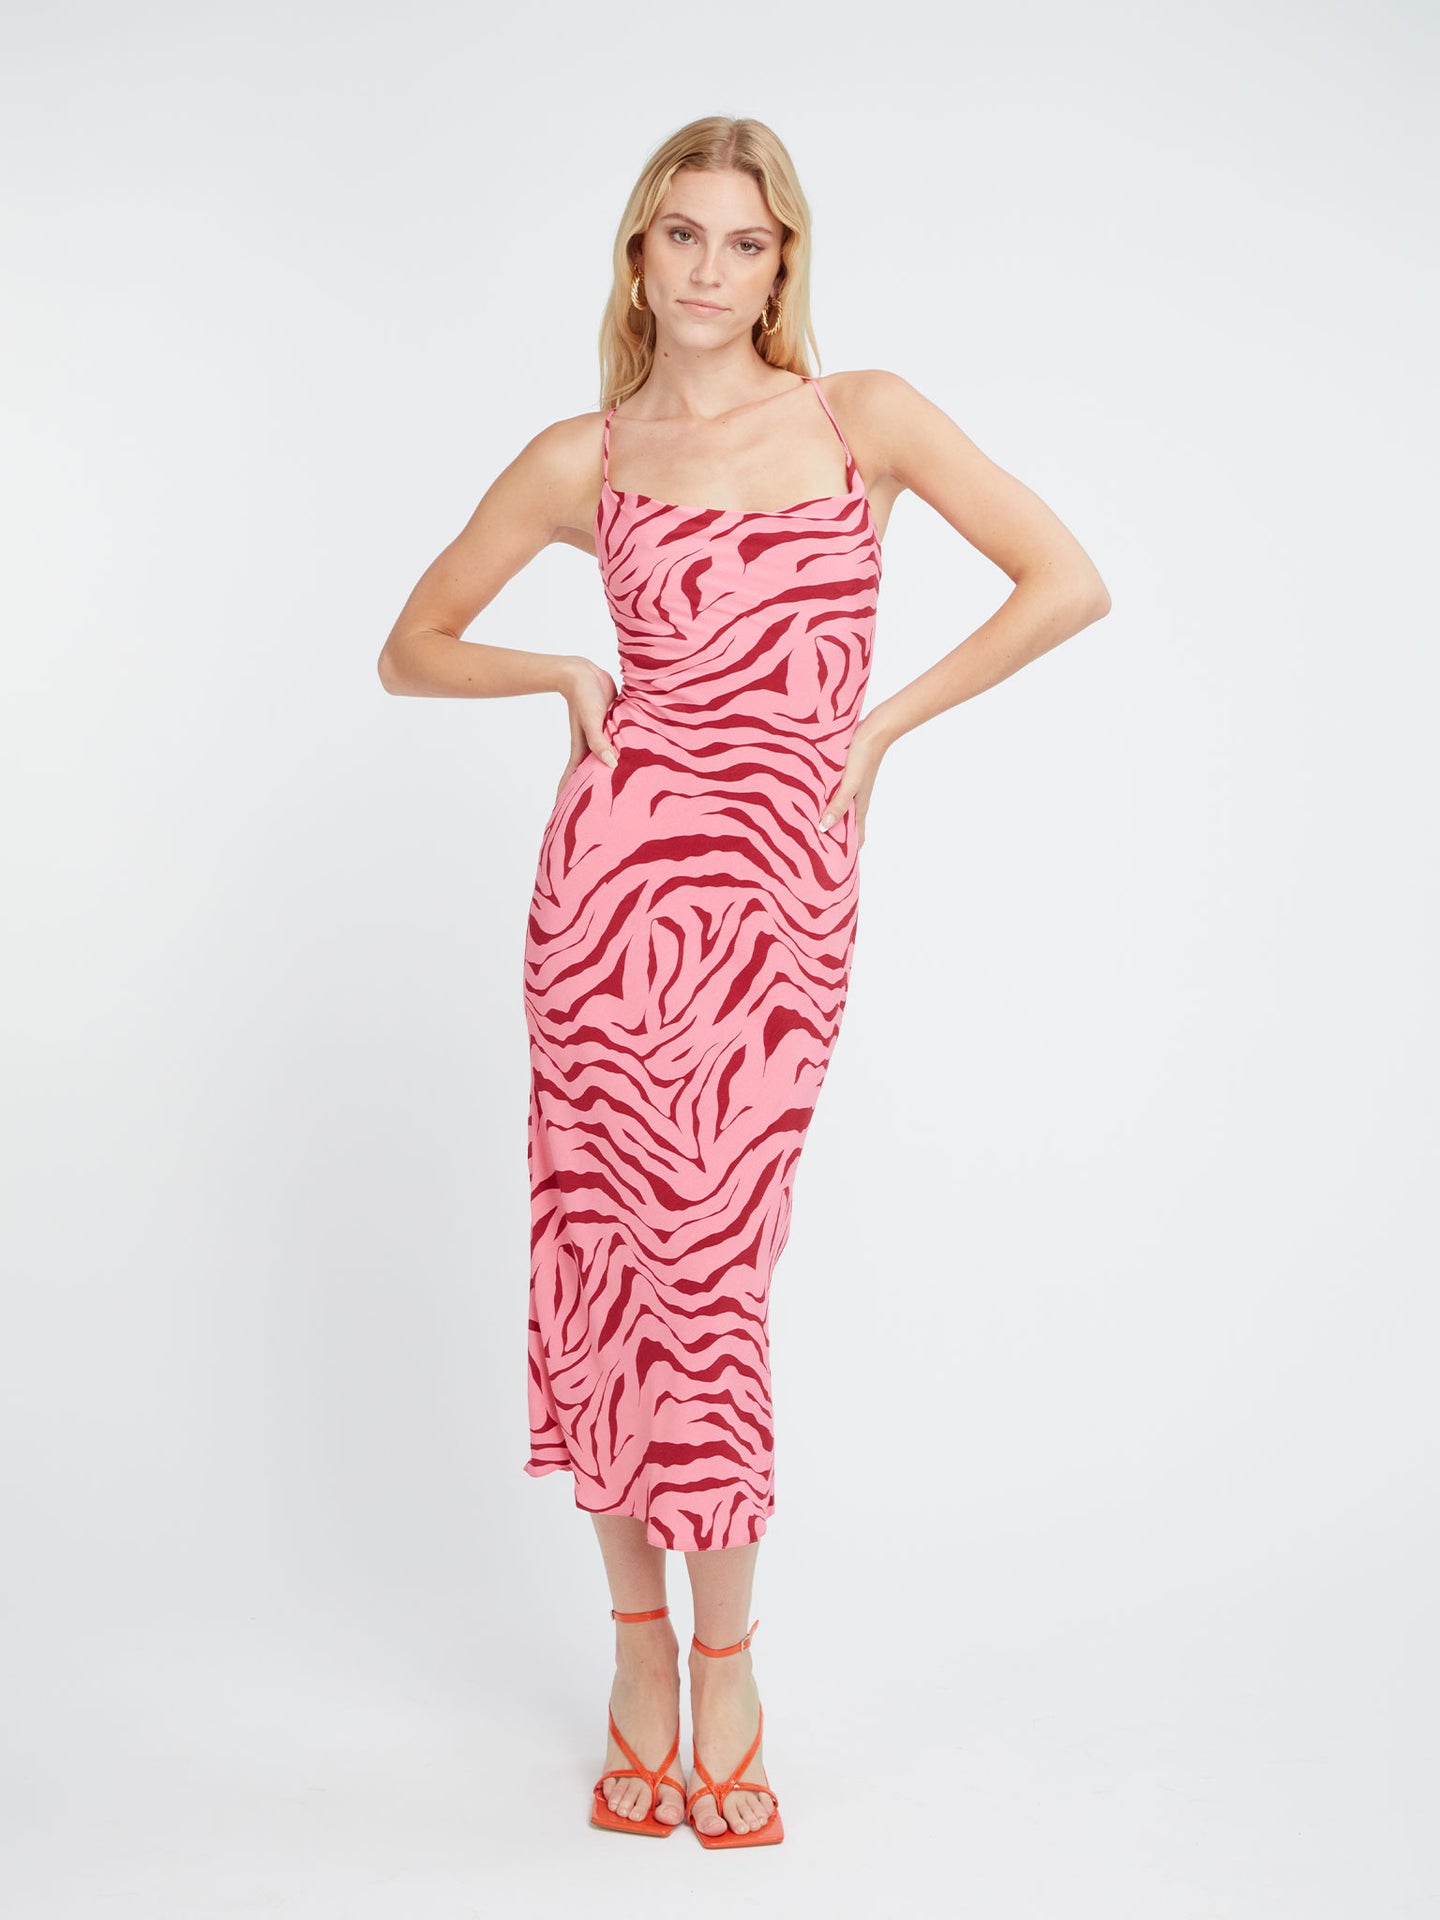 Riviera Midi Dress in Pink Zebra Print